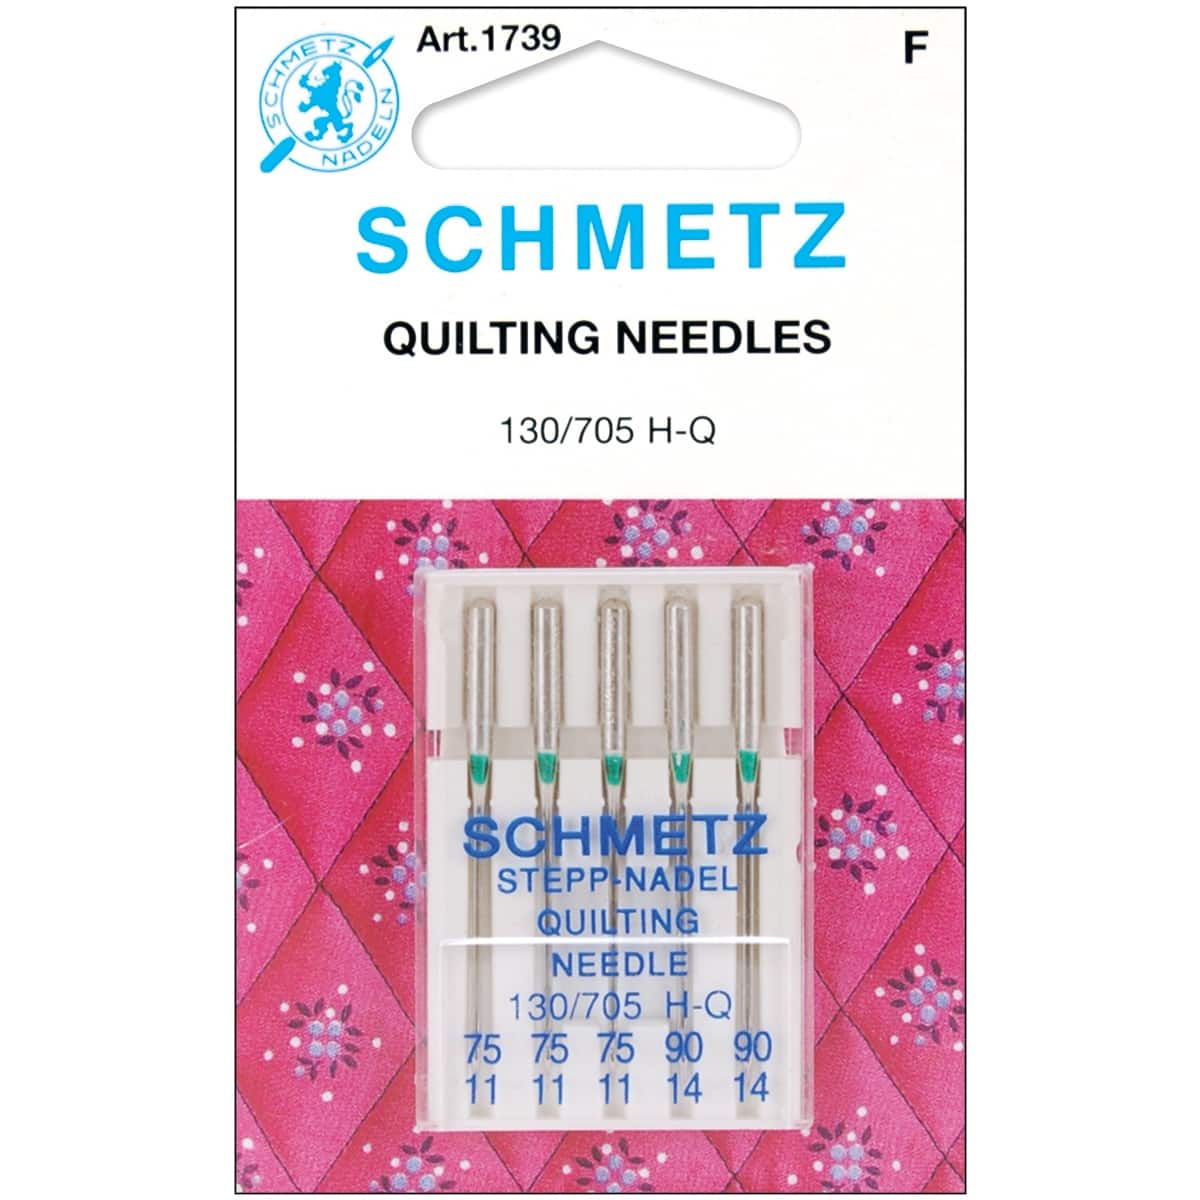 SCHMETZ Quilt Machine Needles